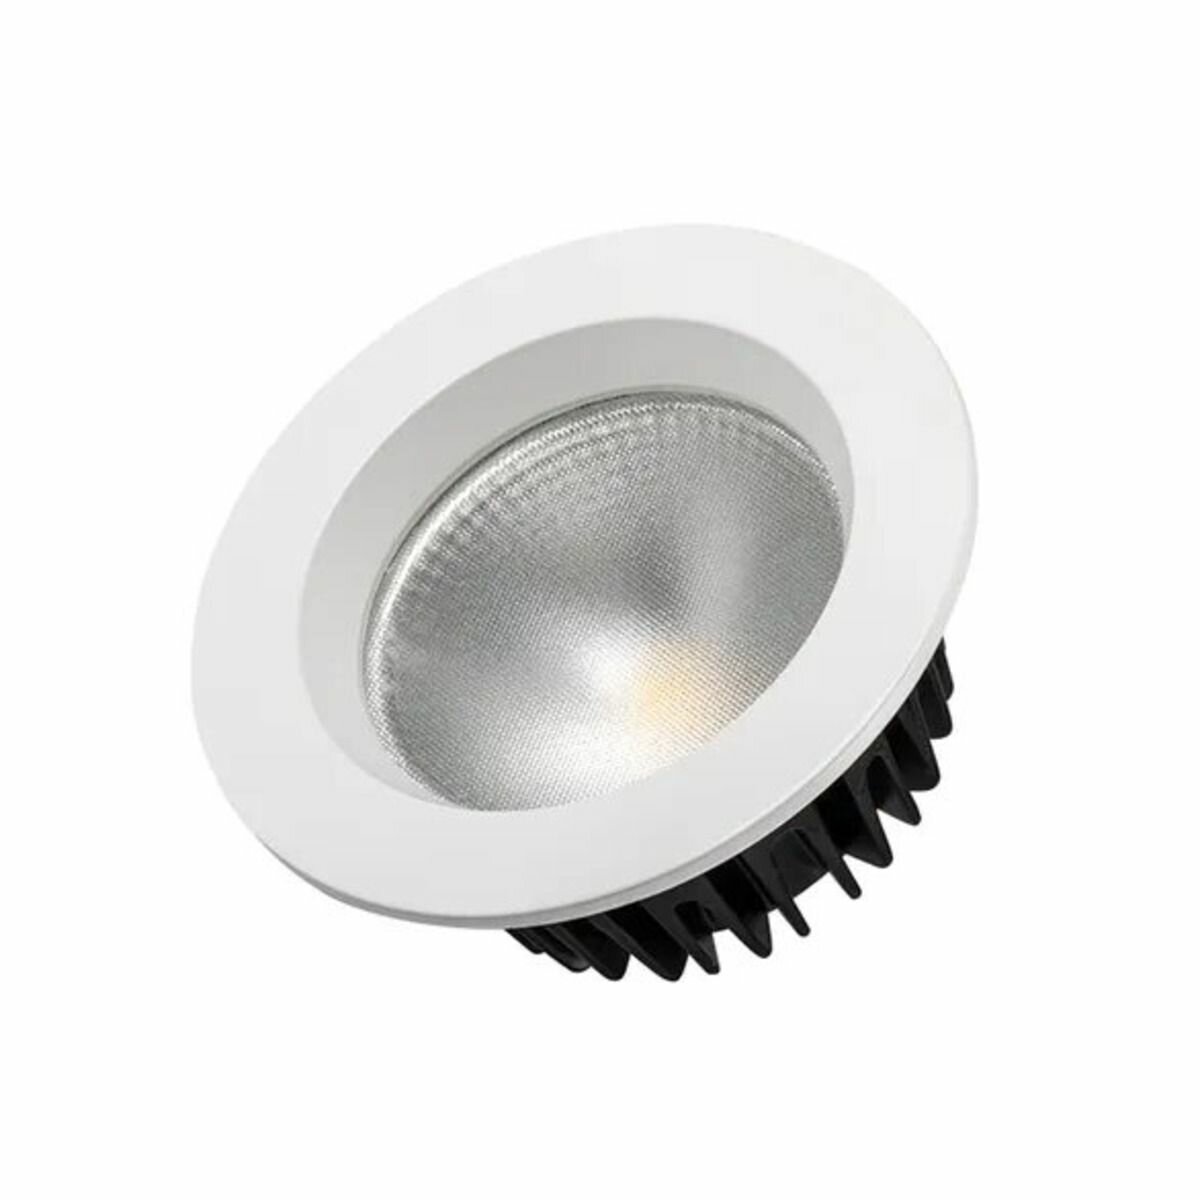 Светильник Arlight LTD-105WH-FROST-9W Warm White 110deg, LED, 9 Вт, 3000, теплый белый, цвет арматуры: черный, цвет плафона: белый